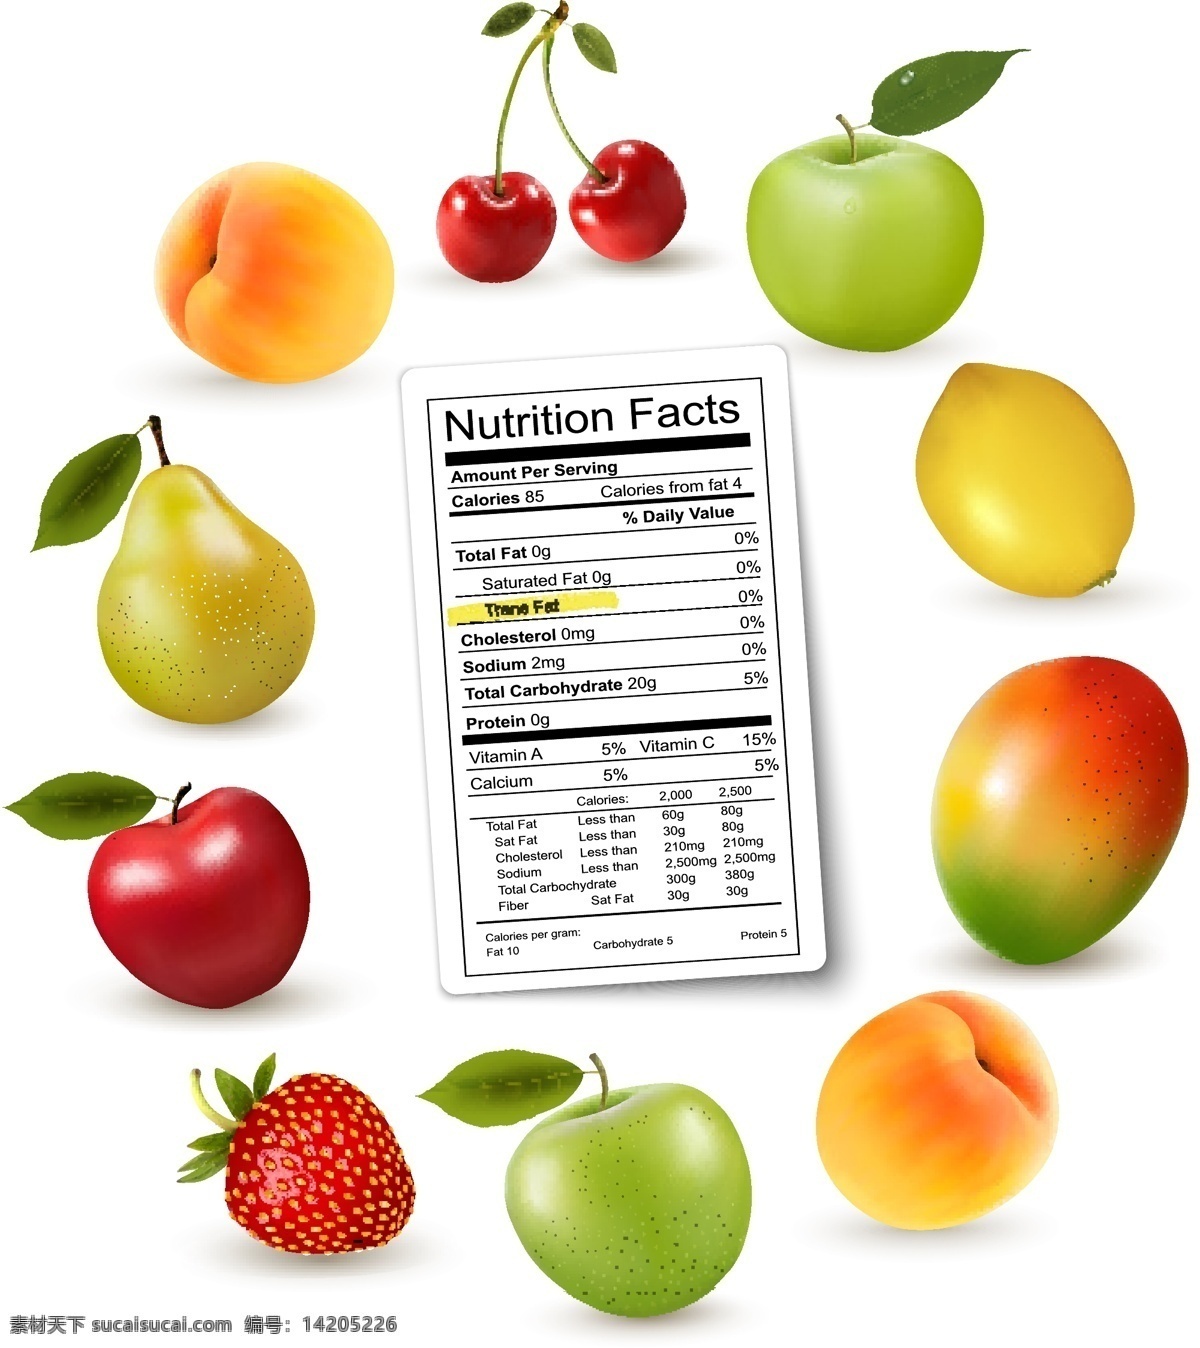 水果 营养 成分表 矢量图 桃 樱桃 梨 芒果 红苹果 草莓 杏 营养成分表 柠檬 苹果